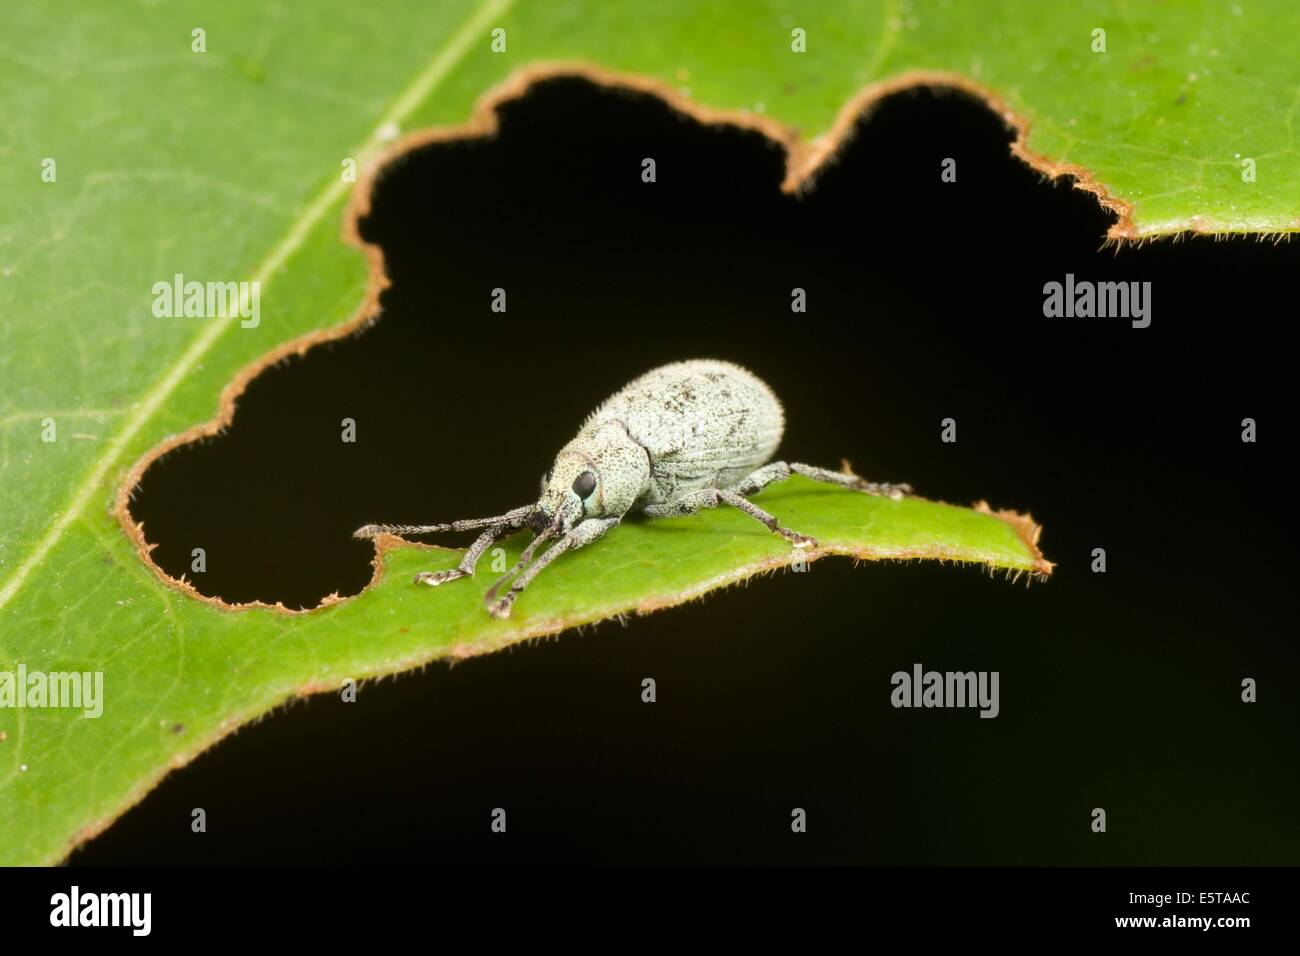 Ein Rüsselkäfer ist ein Käfer aus der Überfamilie Curculionoidea. Curculionidae ist die Familie der "echten" Rüsselkäfer Stockfoto